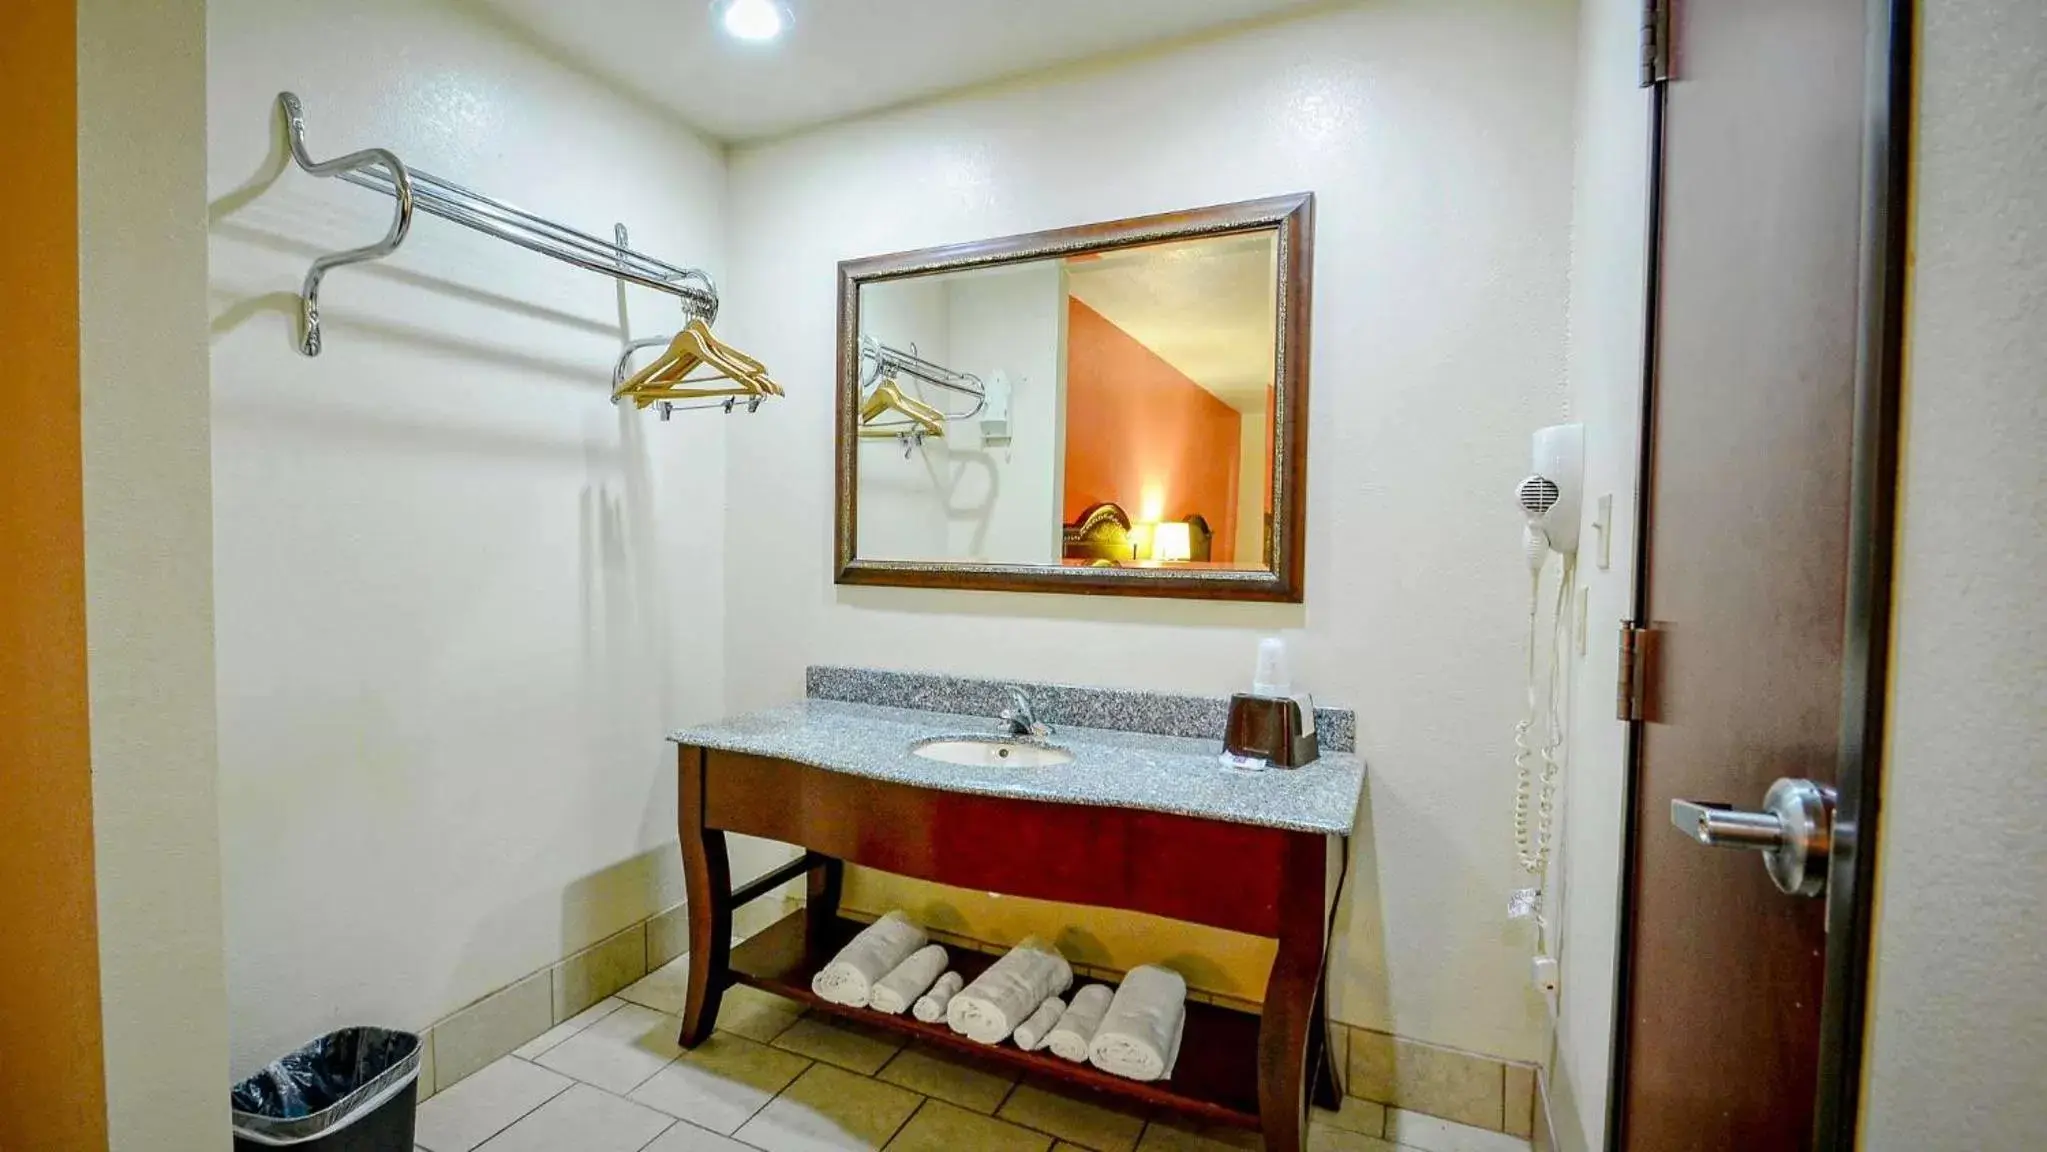 Bedroom, Bathroom in Motel 6-Atoka, OK